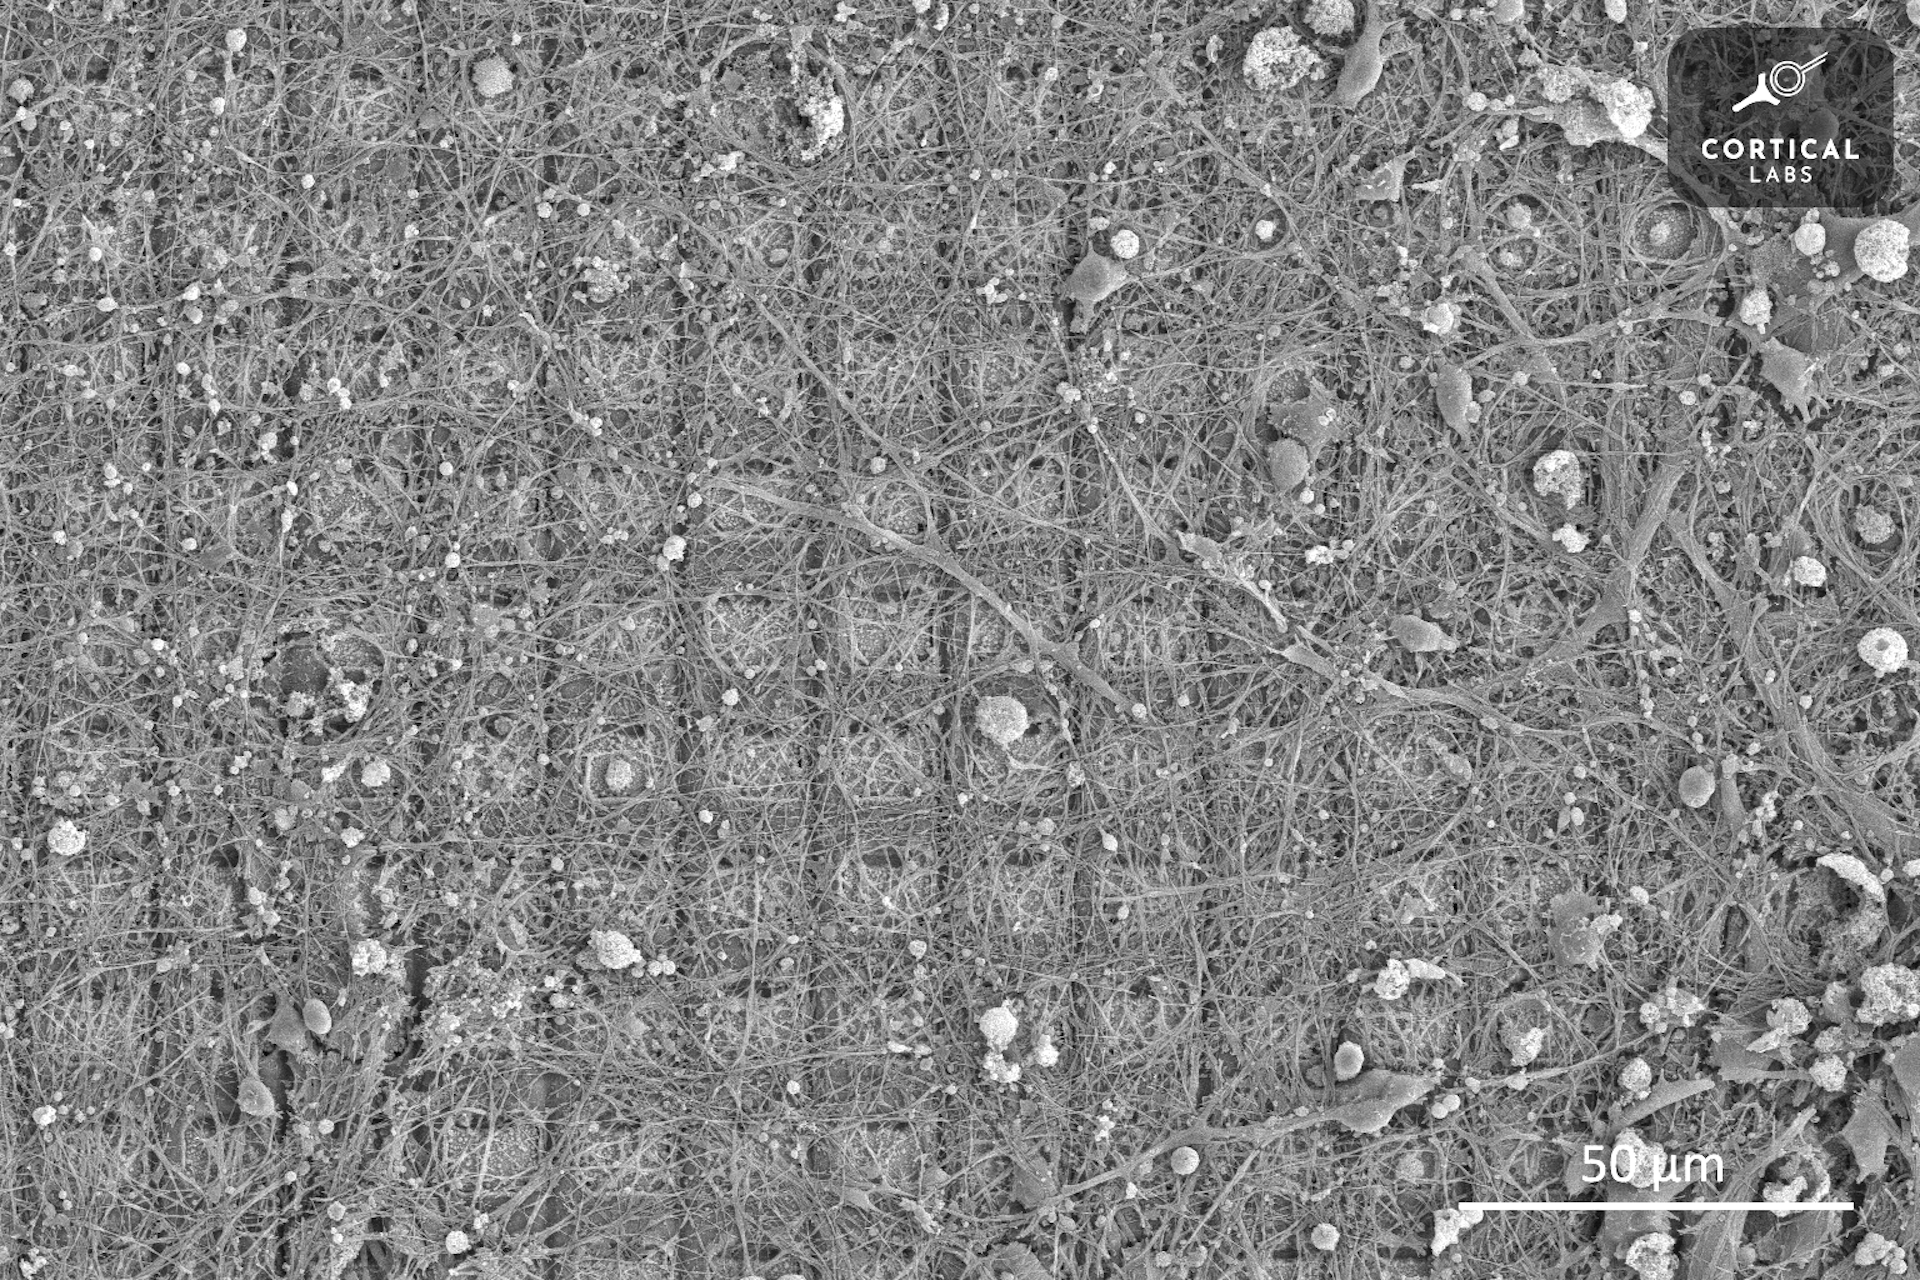 En mikroskopbild visar ett rutnät av rutor täckta med en oregelbunden tillväxt av strängliknande neuroner.